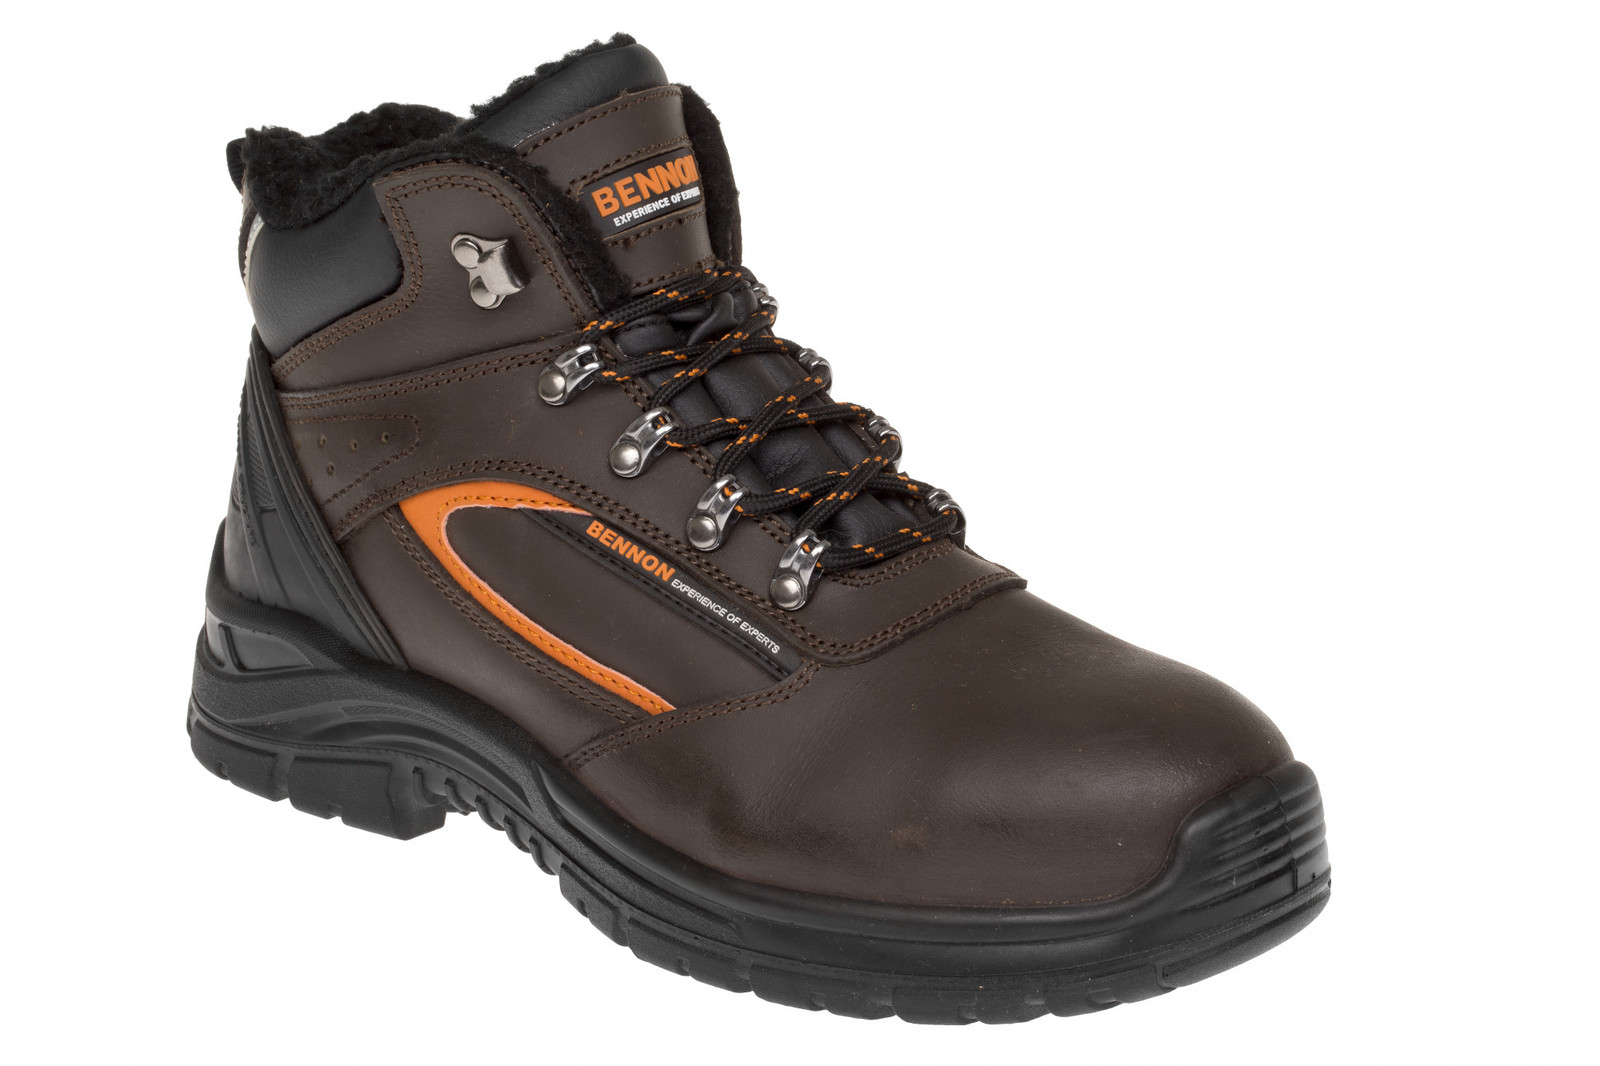 Zimná bezpečnostná obuv Bennon Farmis S3 Winter - veľkosť: 44, farba: hnedá